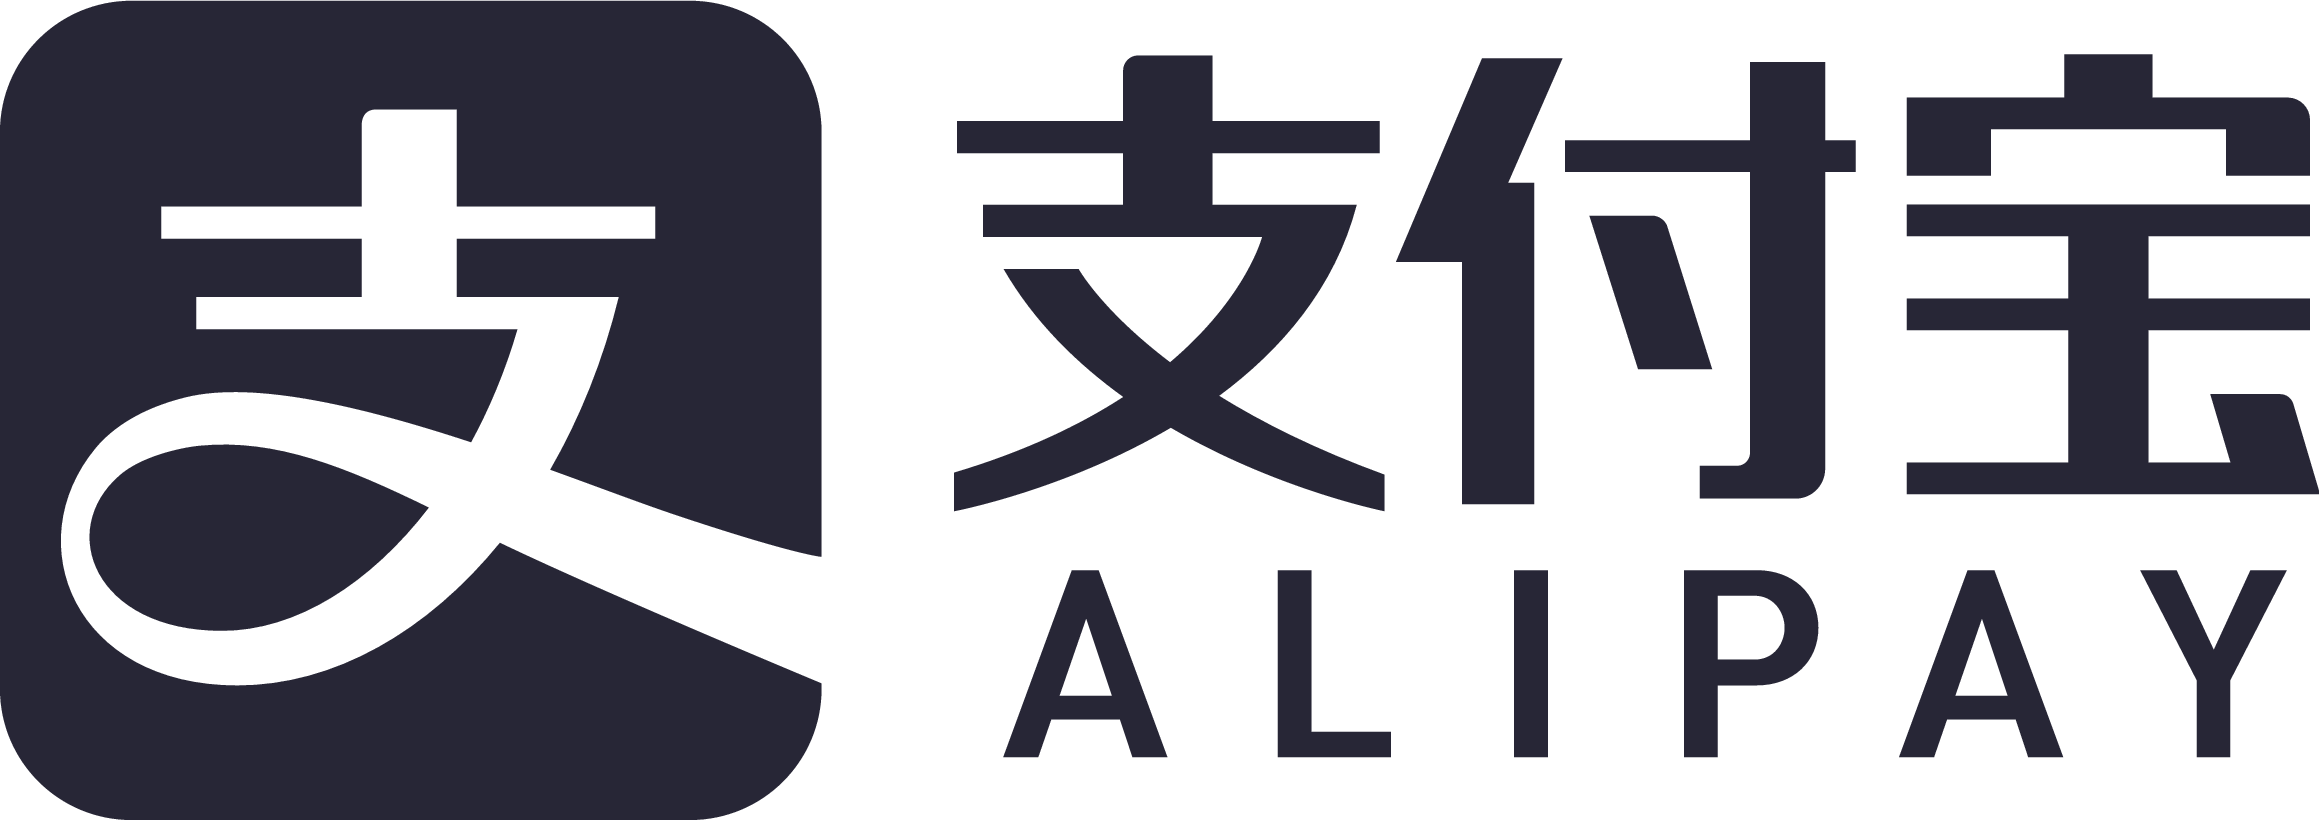 Alipay com. Alipay. Alipay логотип. Алипей иконка. Alipay логотип без фона.